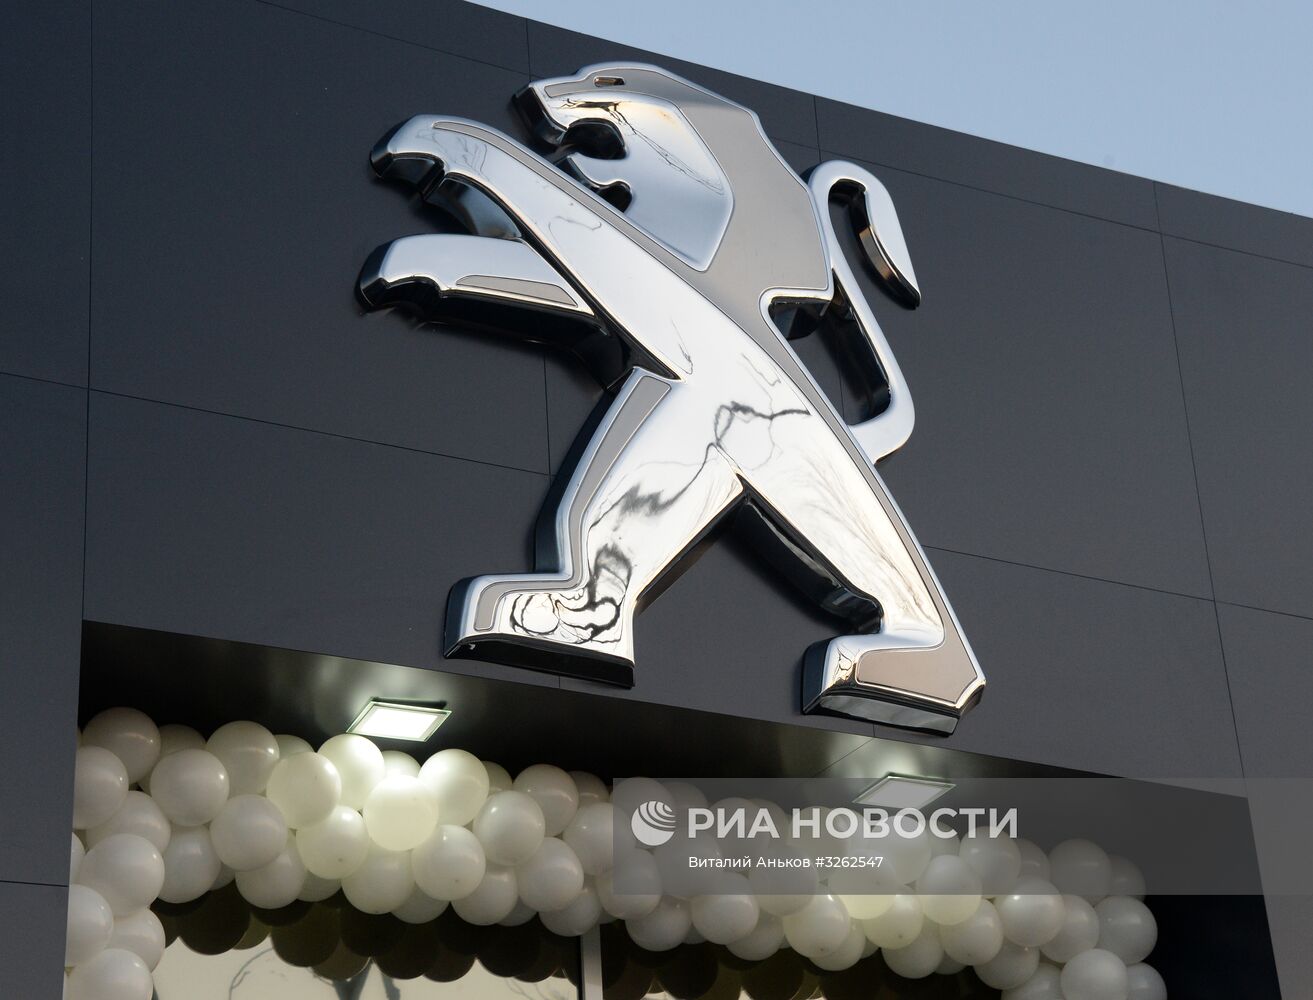 Открытие дилерского центра концерна "Peugeot" во Владивостоке